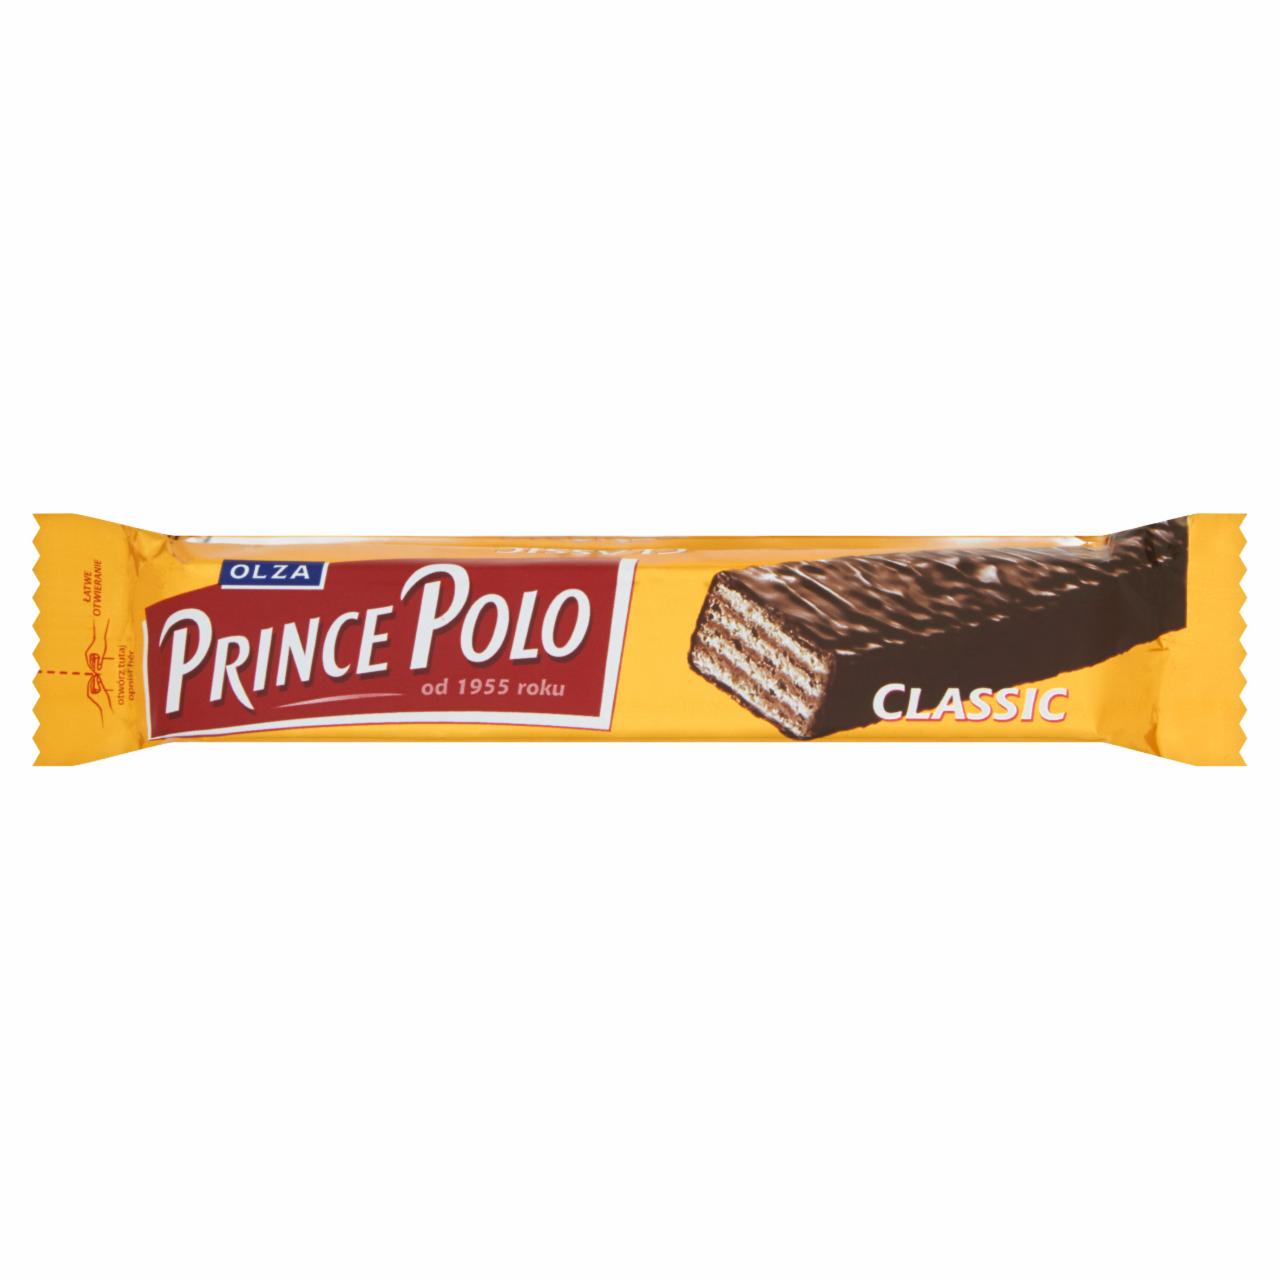 Zdjęcia - Prince Polo Classic Kruchy wafelek z kremem kakaowym oblany czekoladą 17,5 g Olza